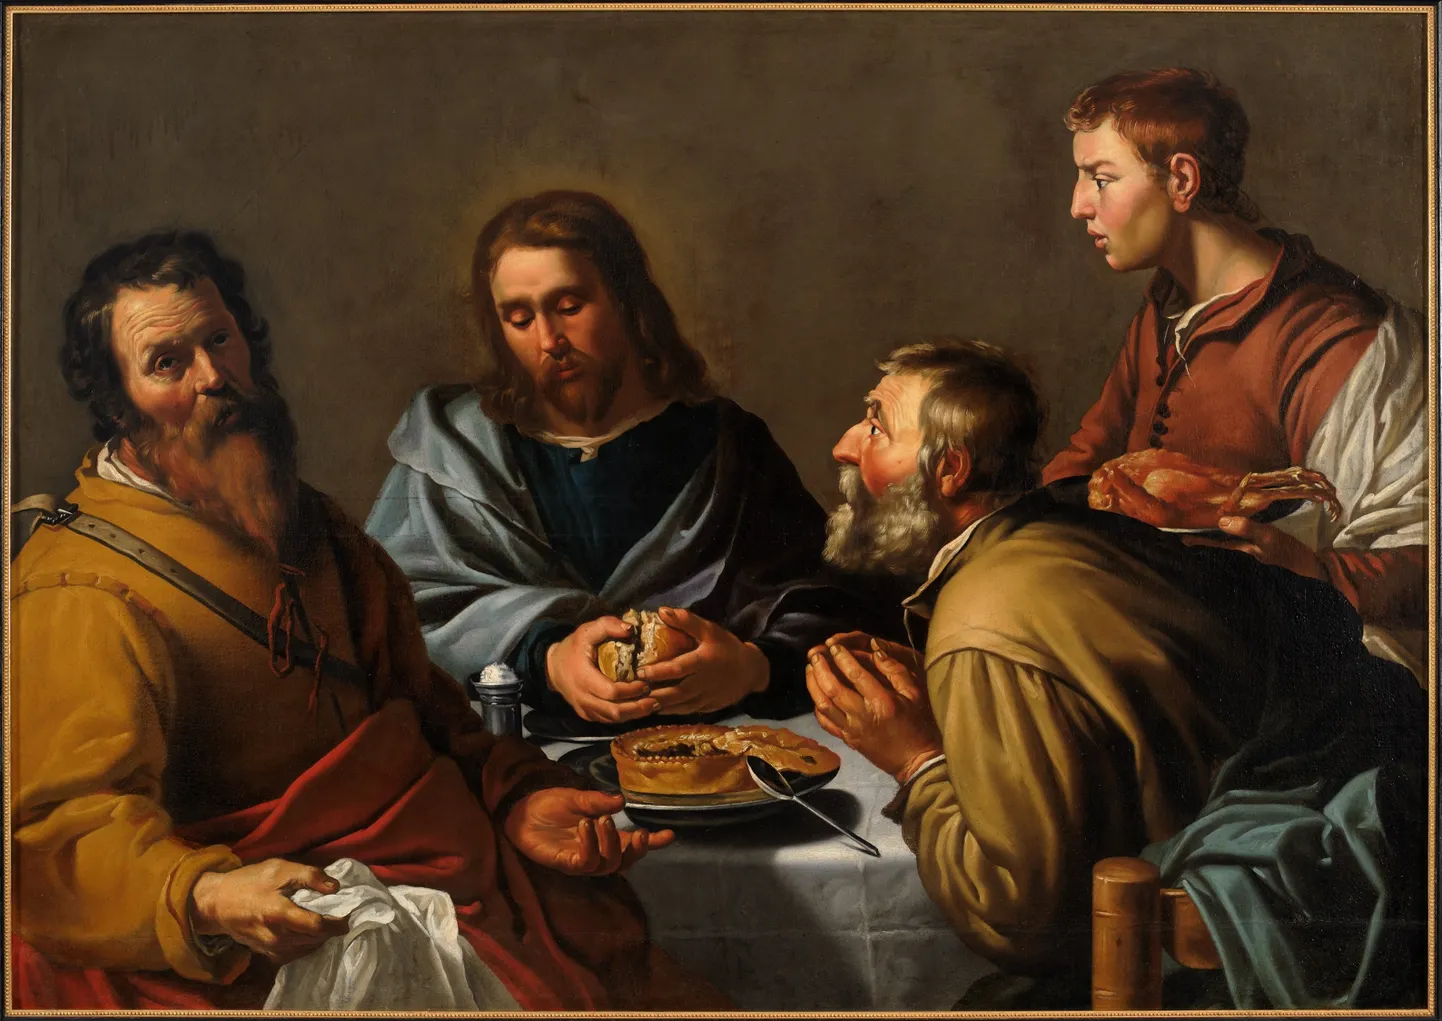 Воскресший Иисус с апостолами. Только один из них смотрит на Иисуса с явным изумлением. «Ужин в Эммаусе», неизвестный голландский караваджист, ателье Ламберта Якобса (примерно 1630 год).